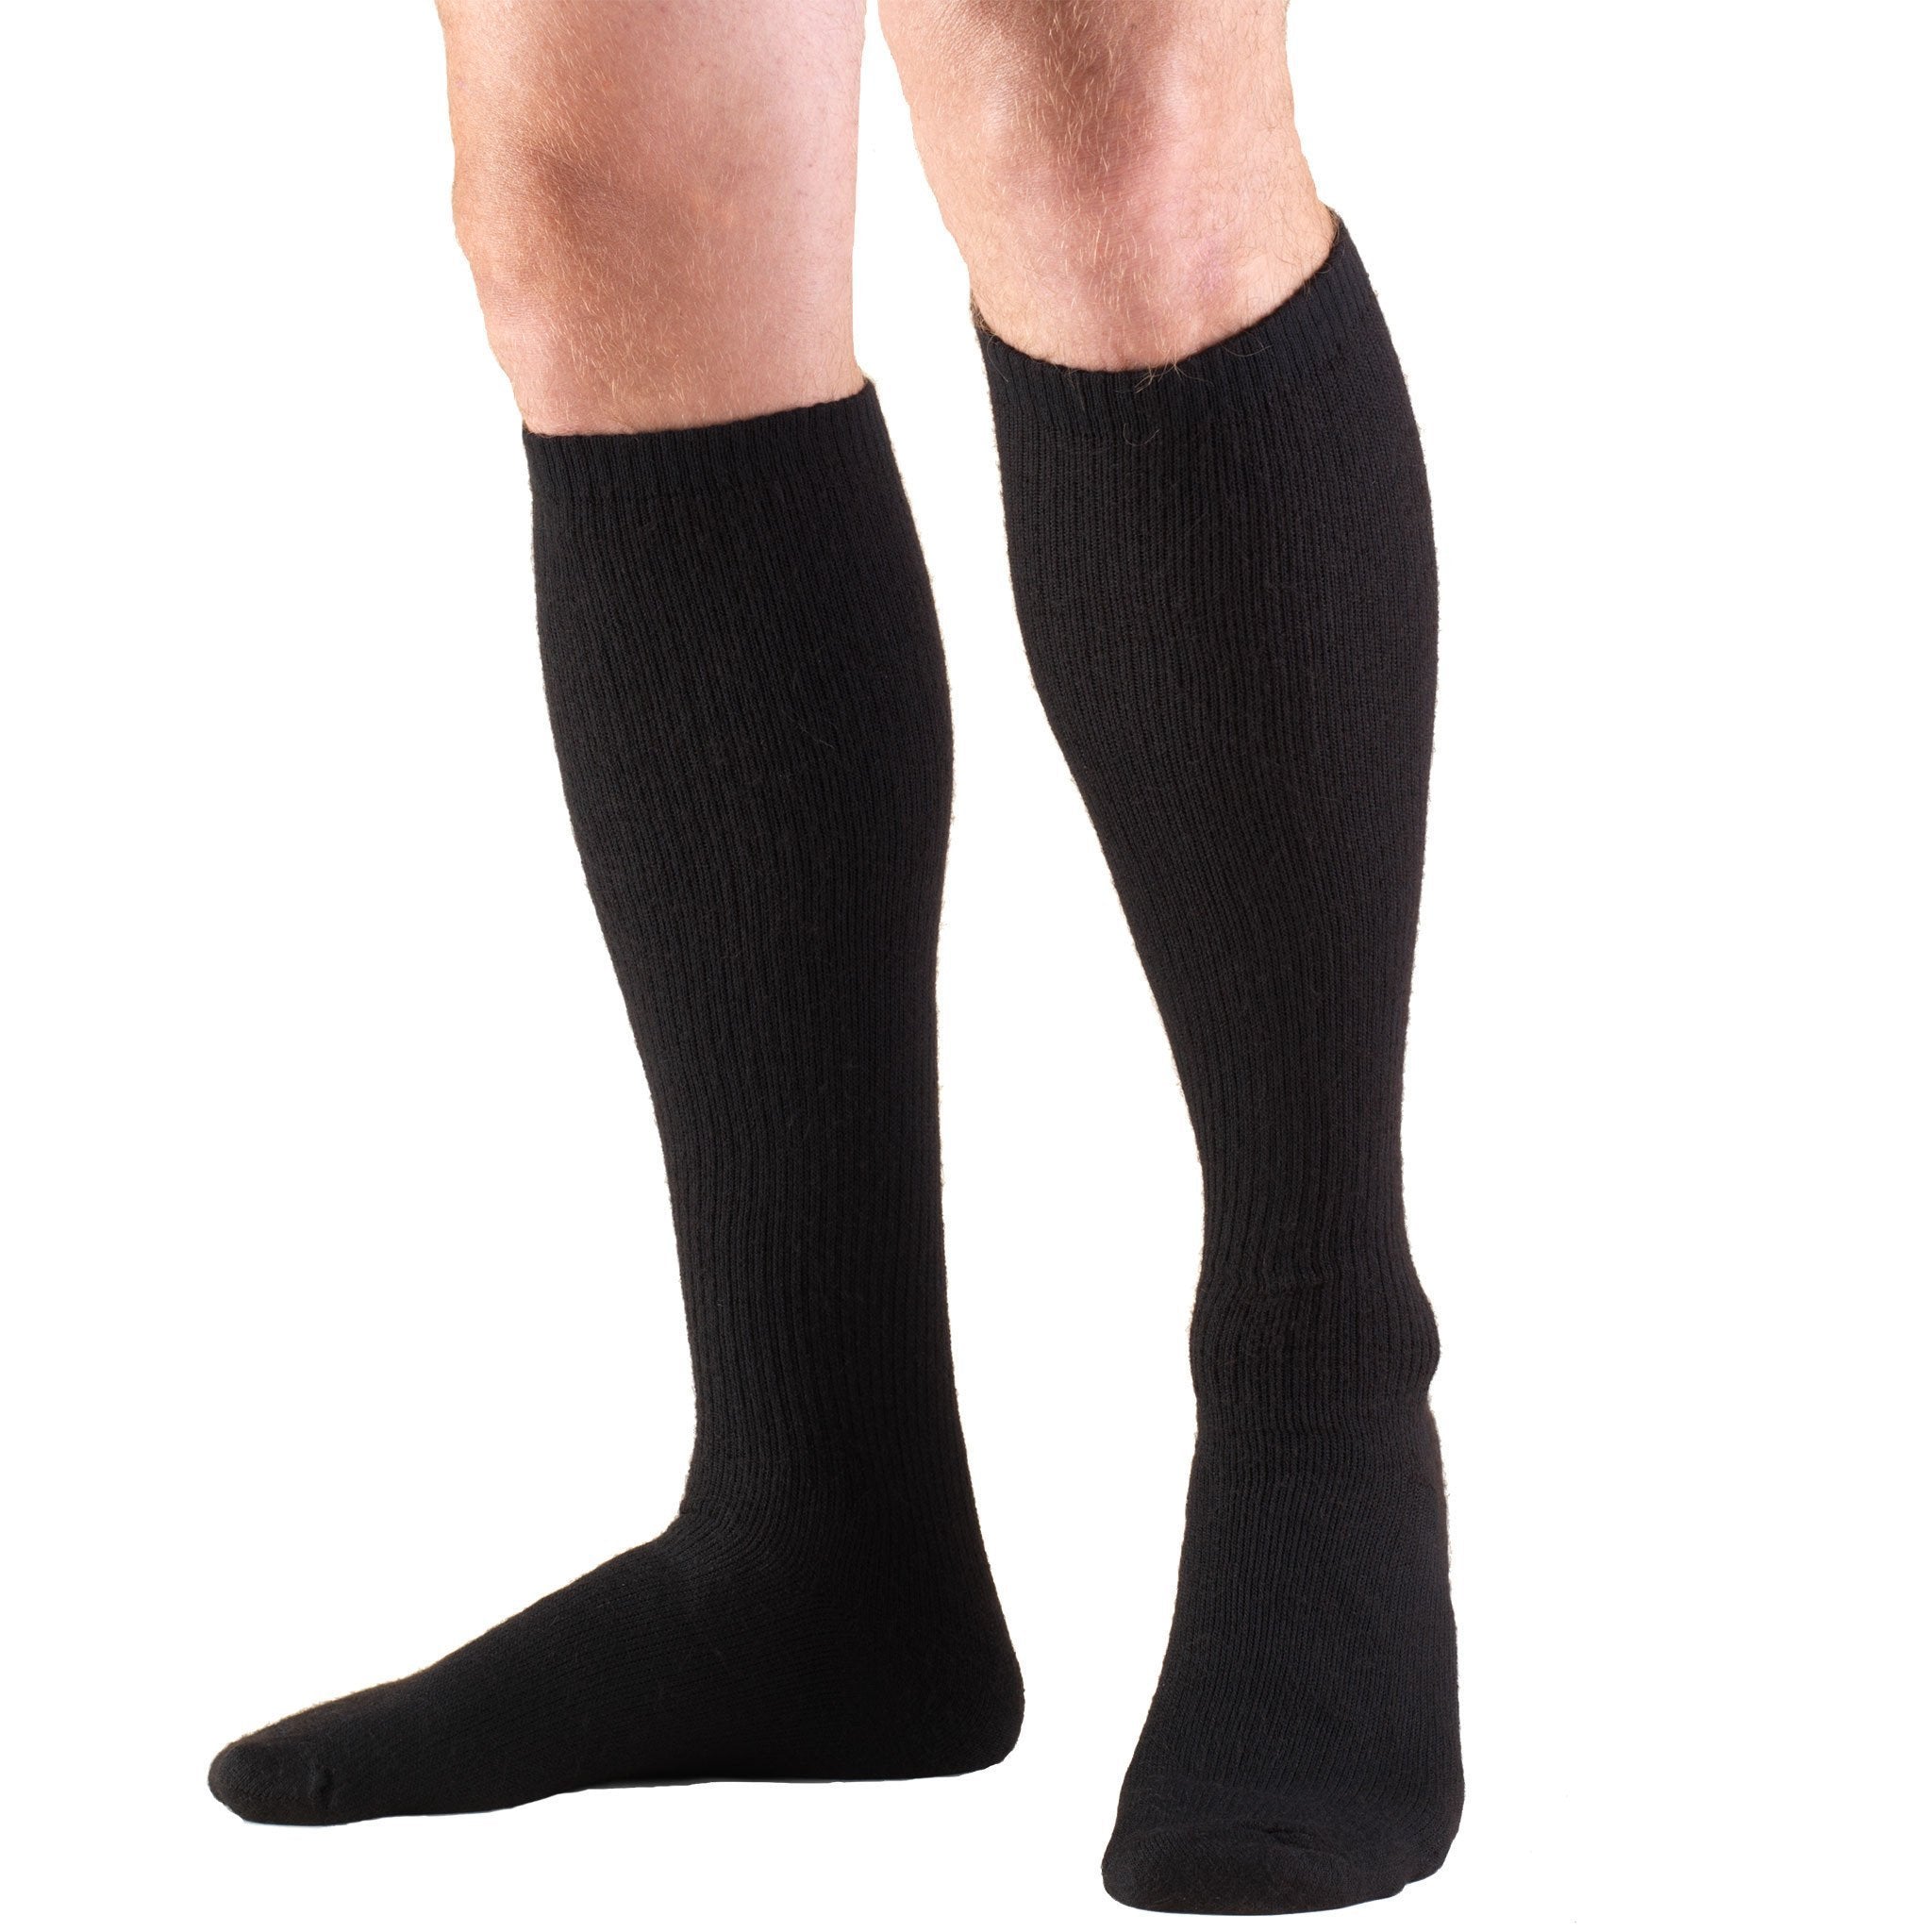 TRUFORM® TruSoft Over Calf Sock 8-15 mmHg – Compression Store